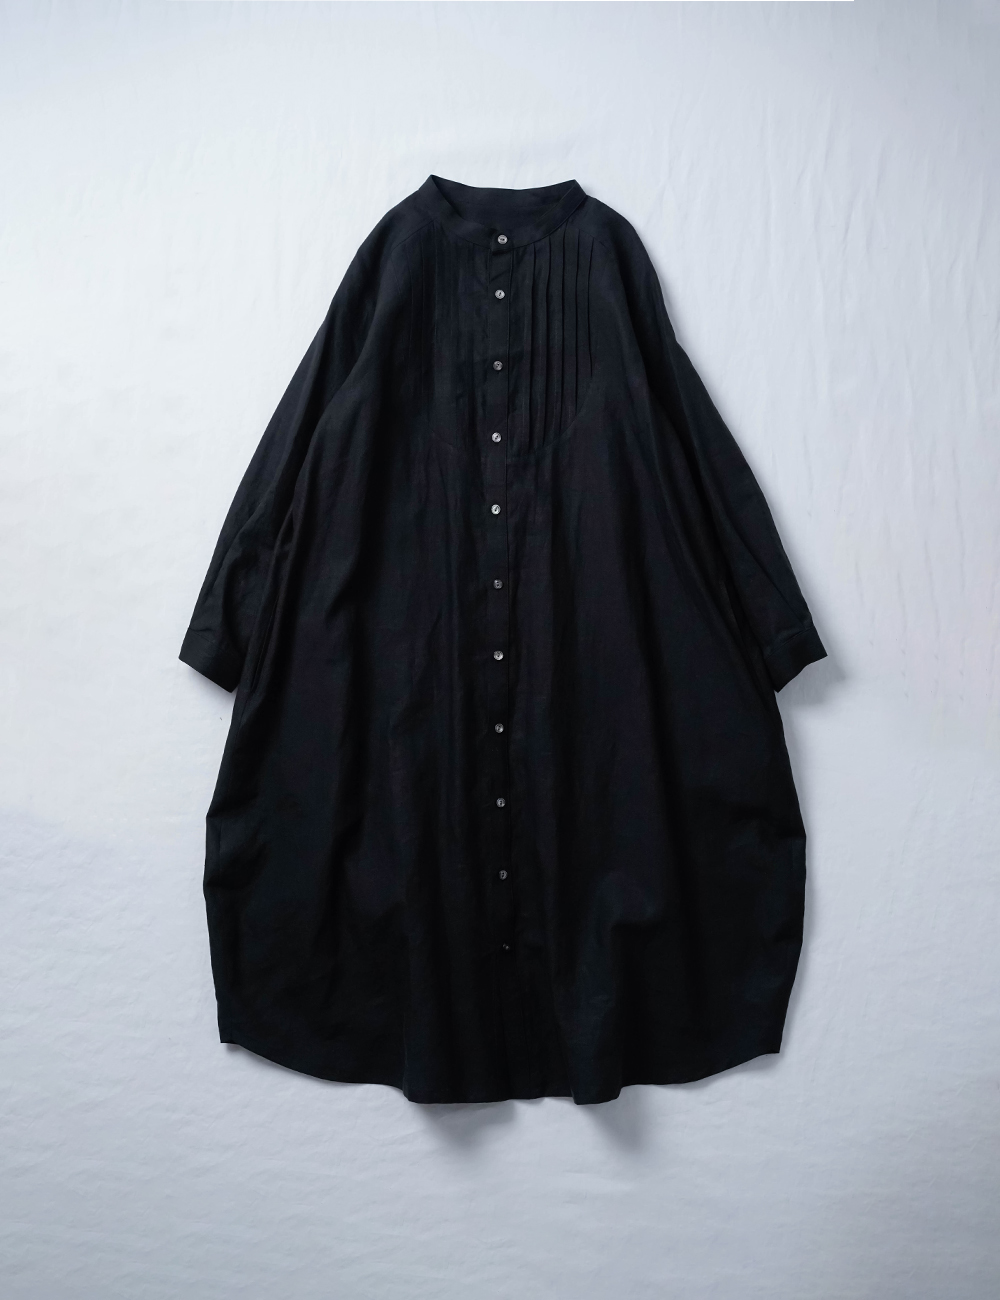 【リネンワンピース】 見惚れるプザムコクーンドレス 超高密度リネン/ 黒色 a082b-bck1